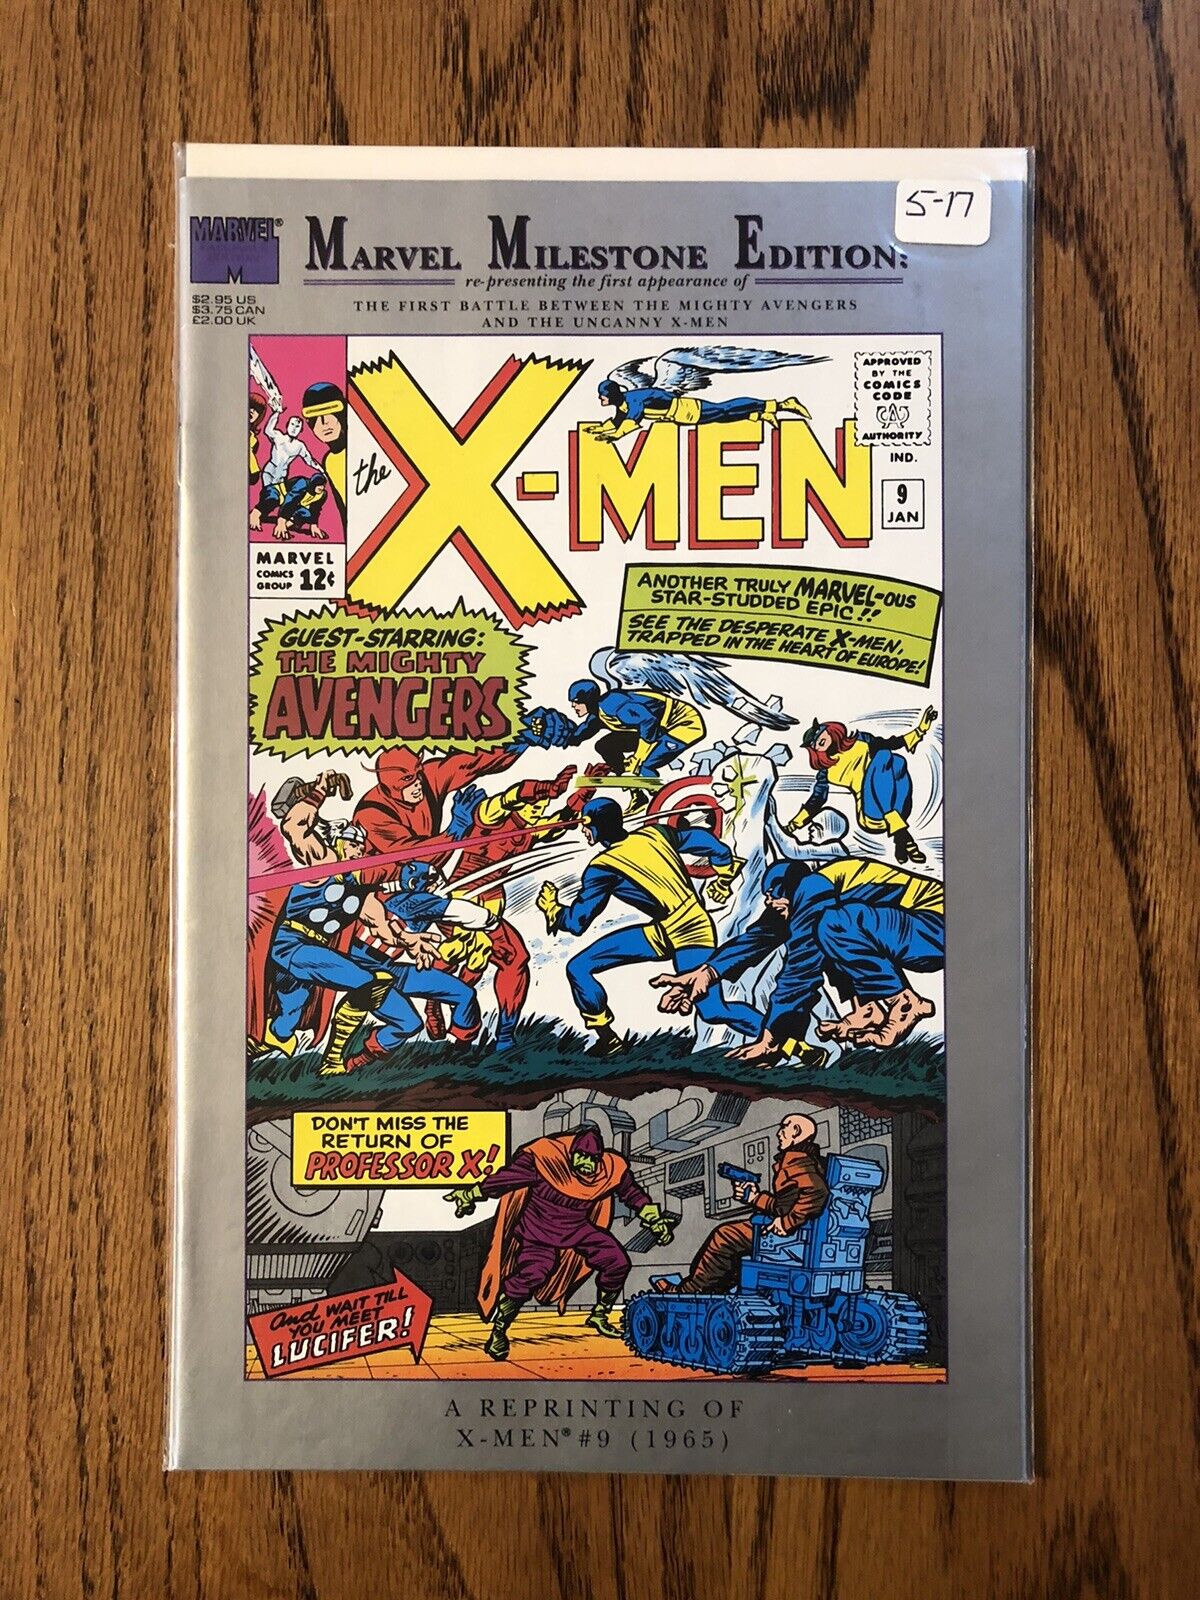 MARVEL MILESTONE EDITION: X-MEN #1 (Marvel, 1991)  Lee/Kirby